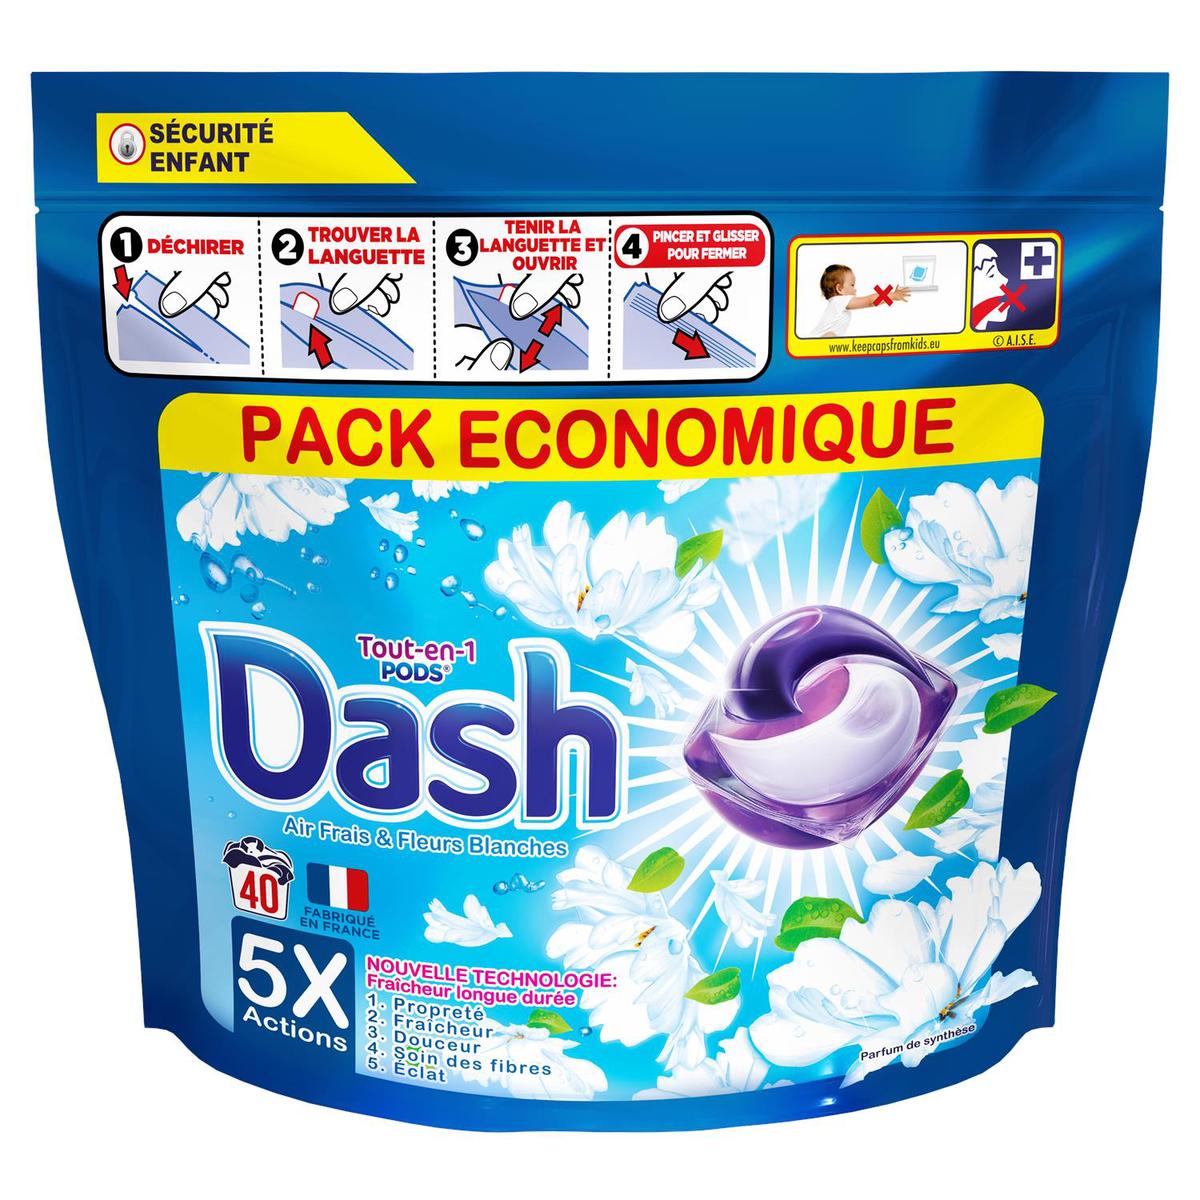 Achat Dash Lessive Capsule Souffle Précieux Tout En 1 Pods, 30 capsules